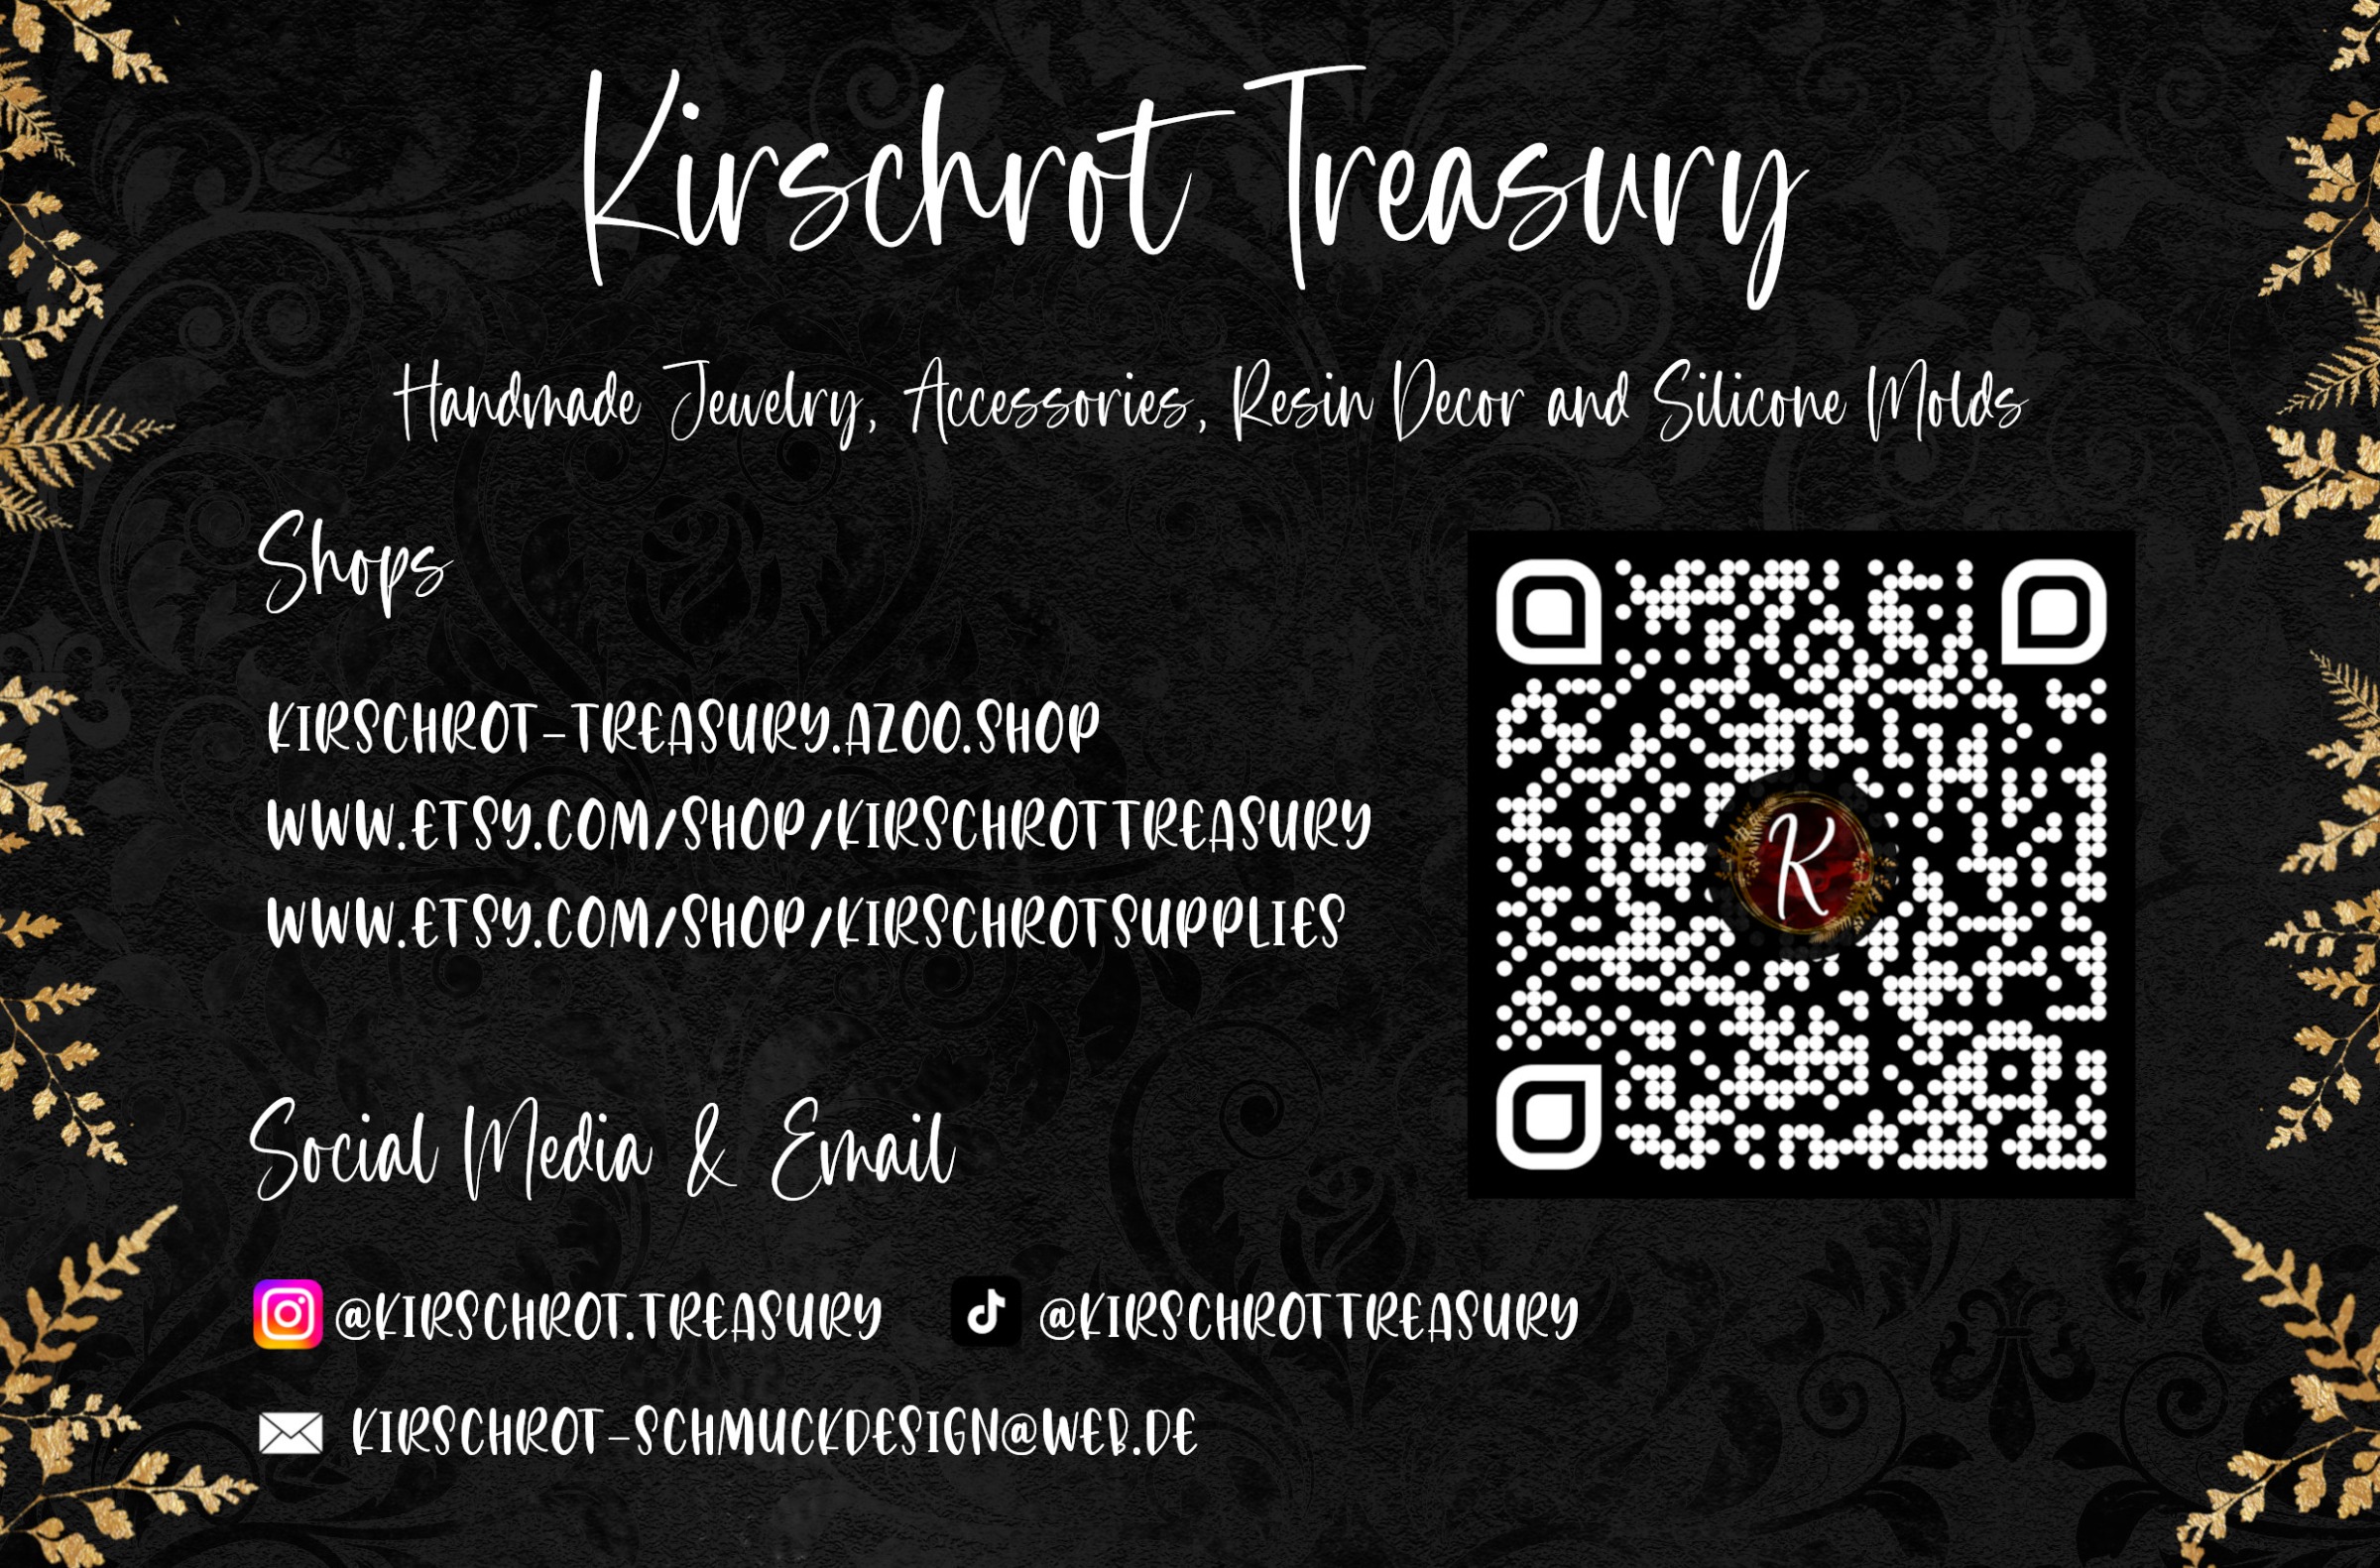 Kirschrot Treasury